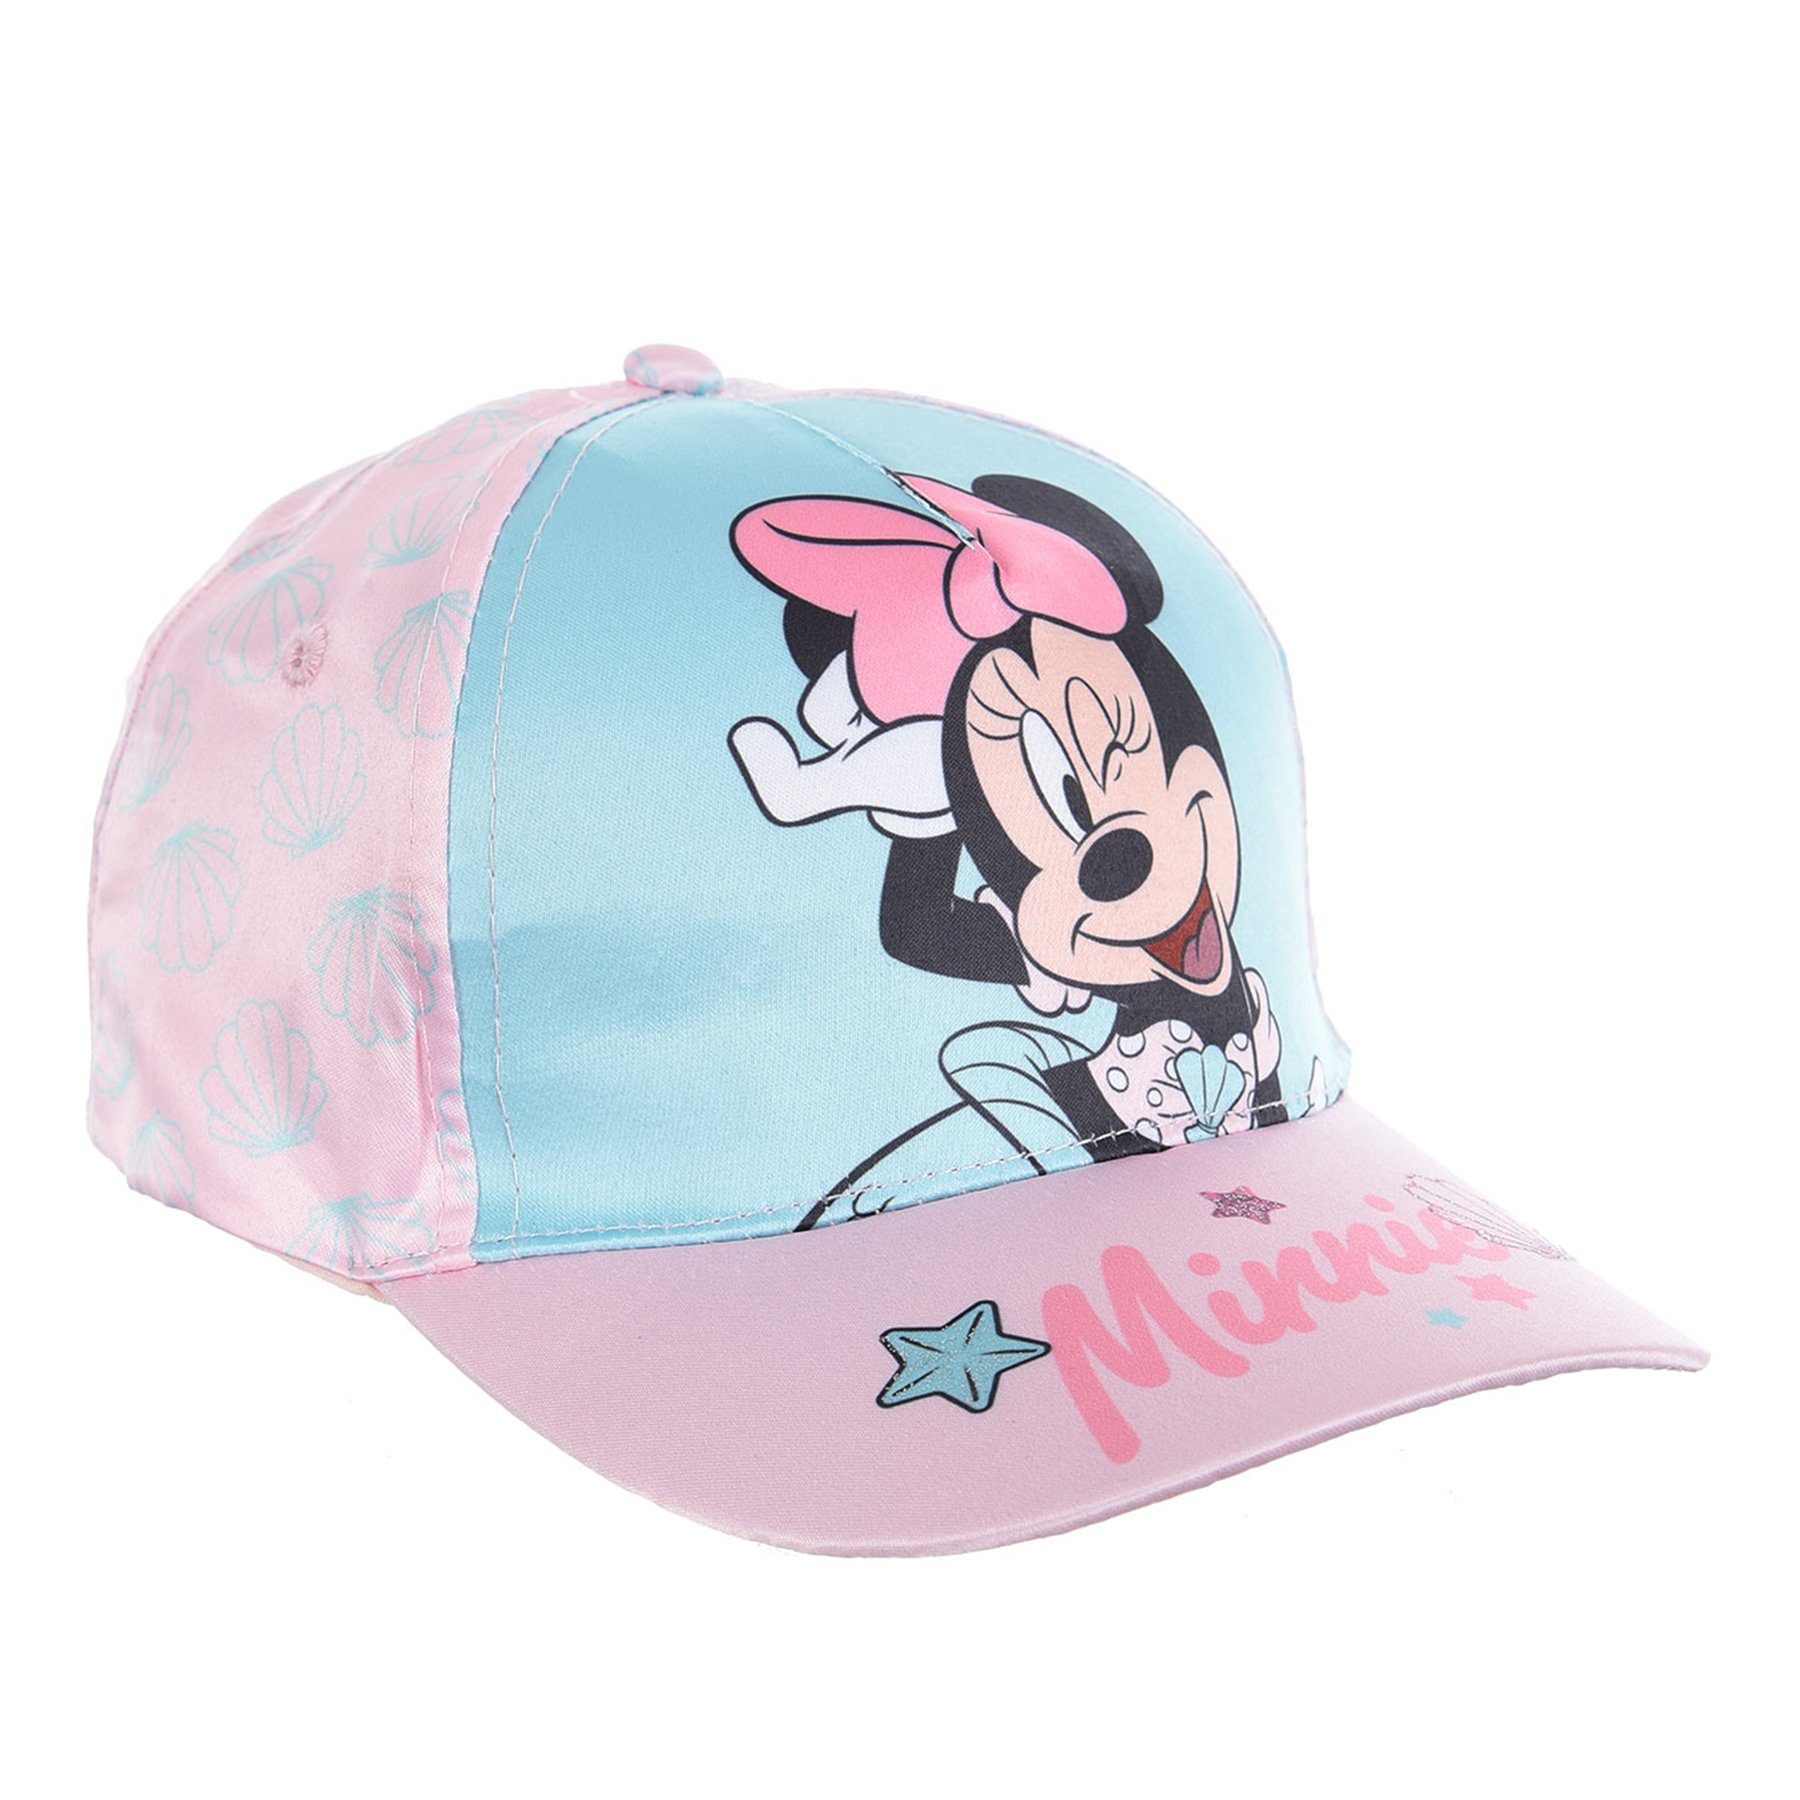 Türkis Mütze Cap Baseball Mouse Kappe Disney Minnie